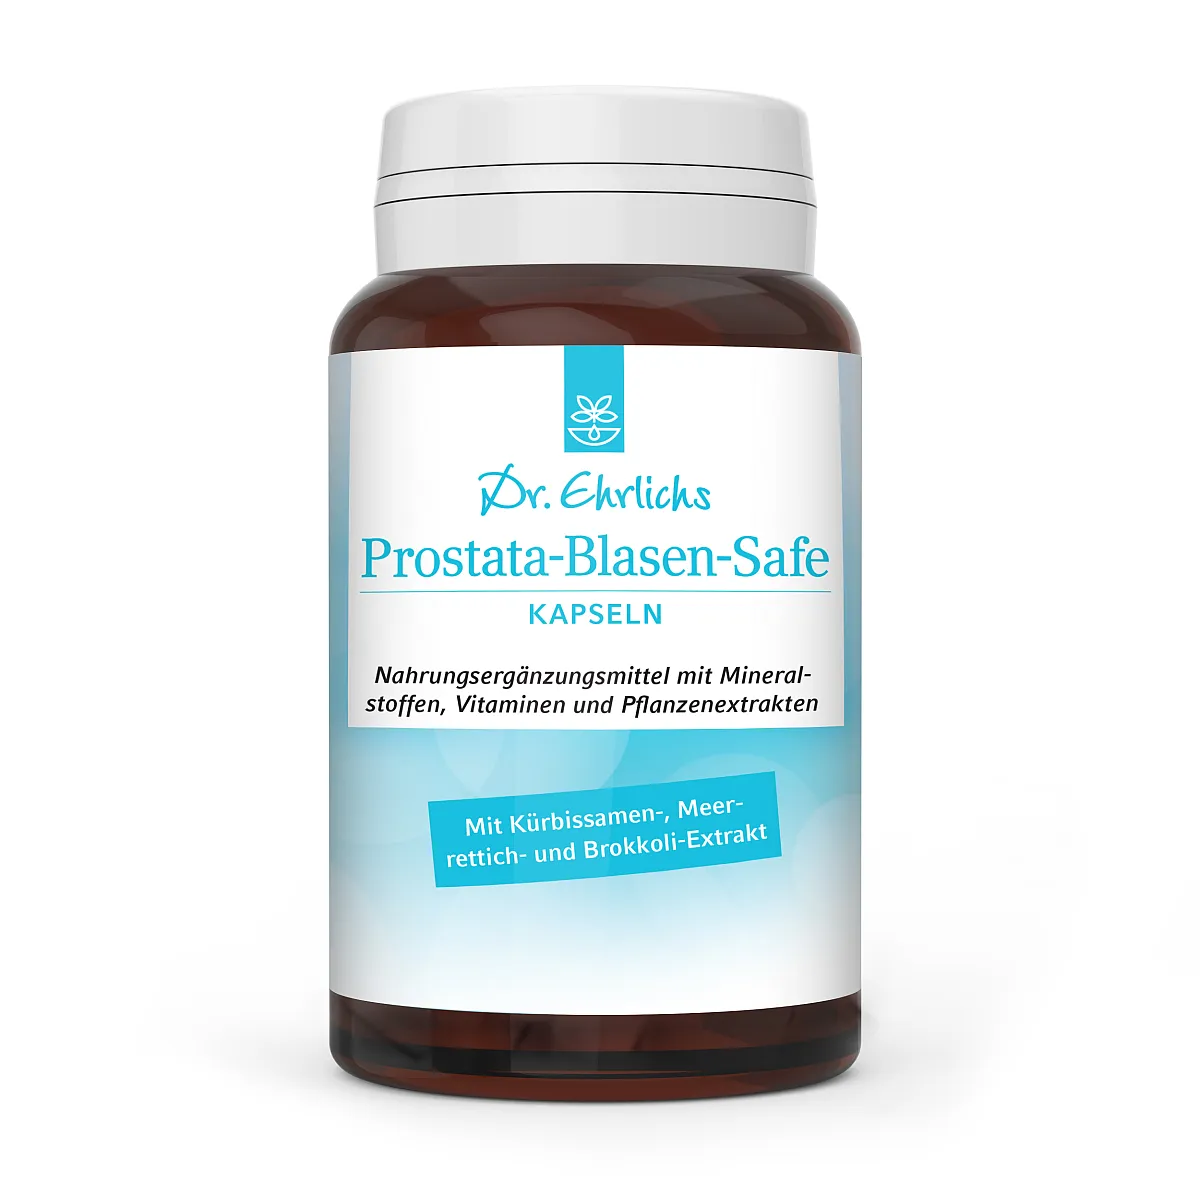 *Dr. Ehrlichs Prostata-Blasen-Safe Kapseln - 90 Stück